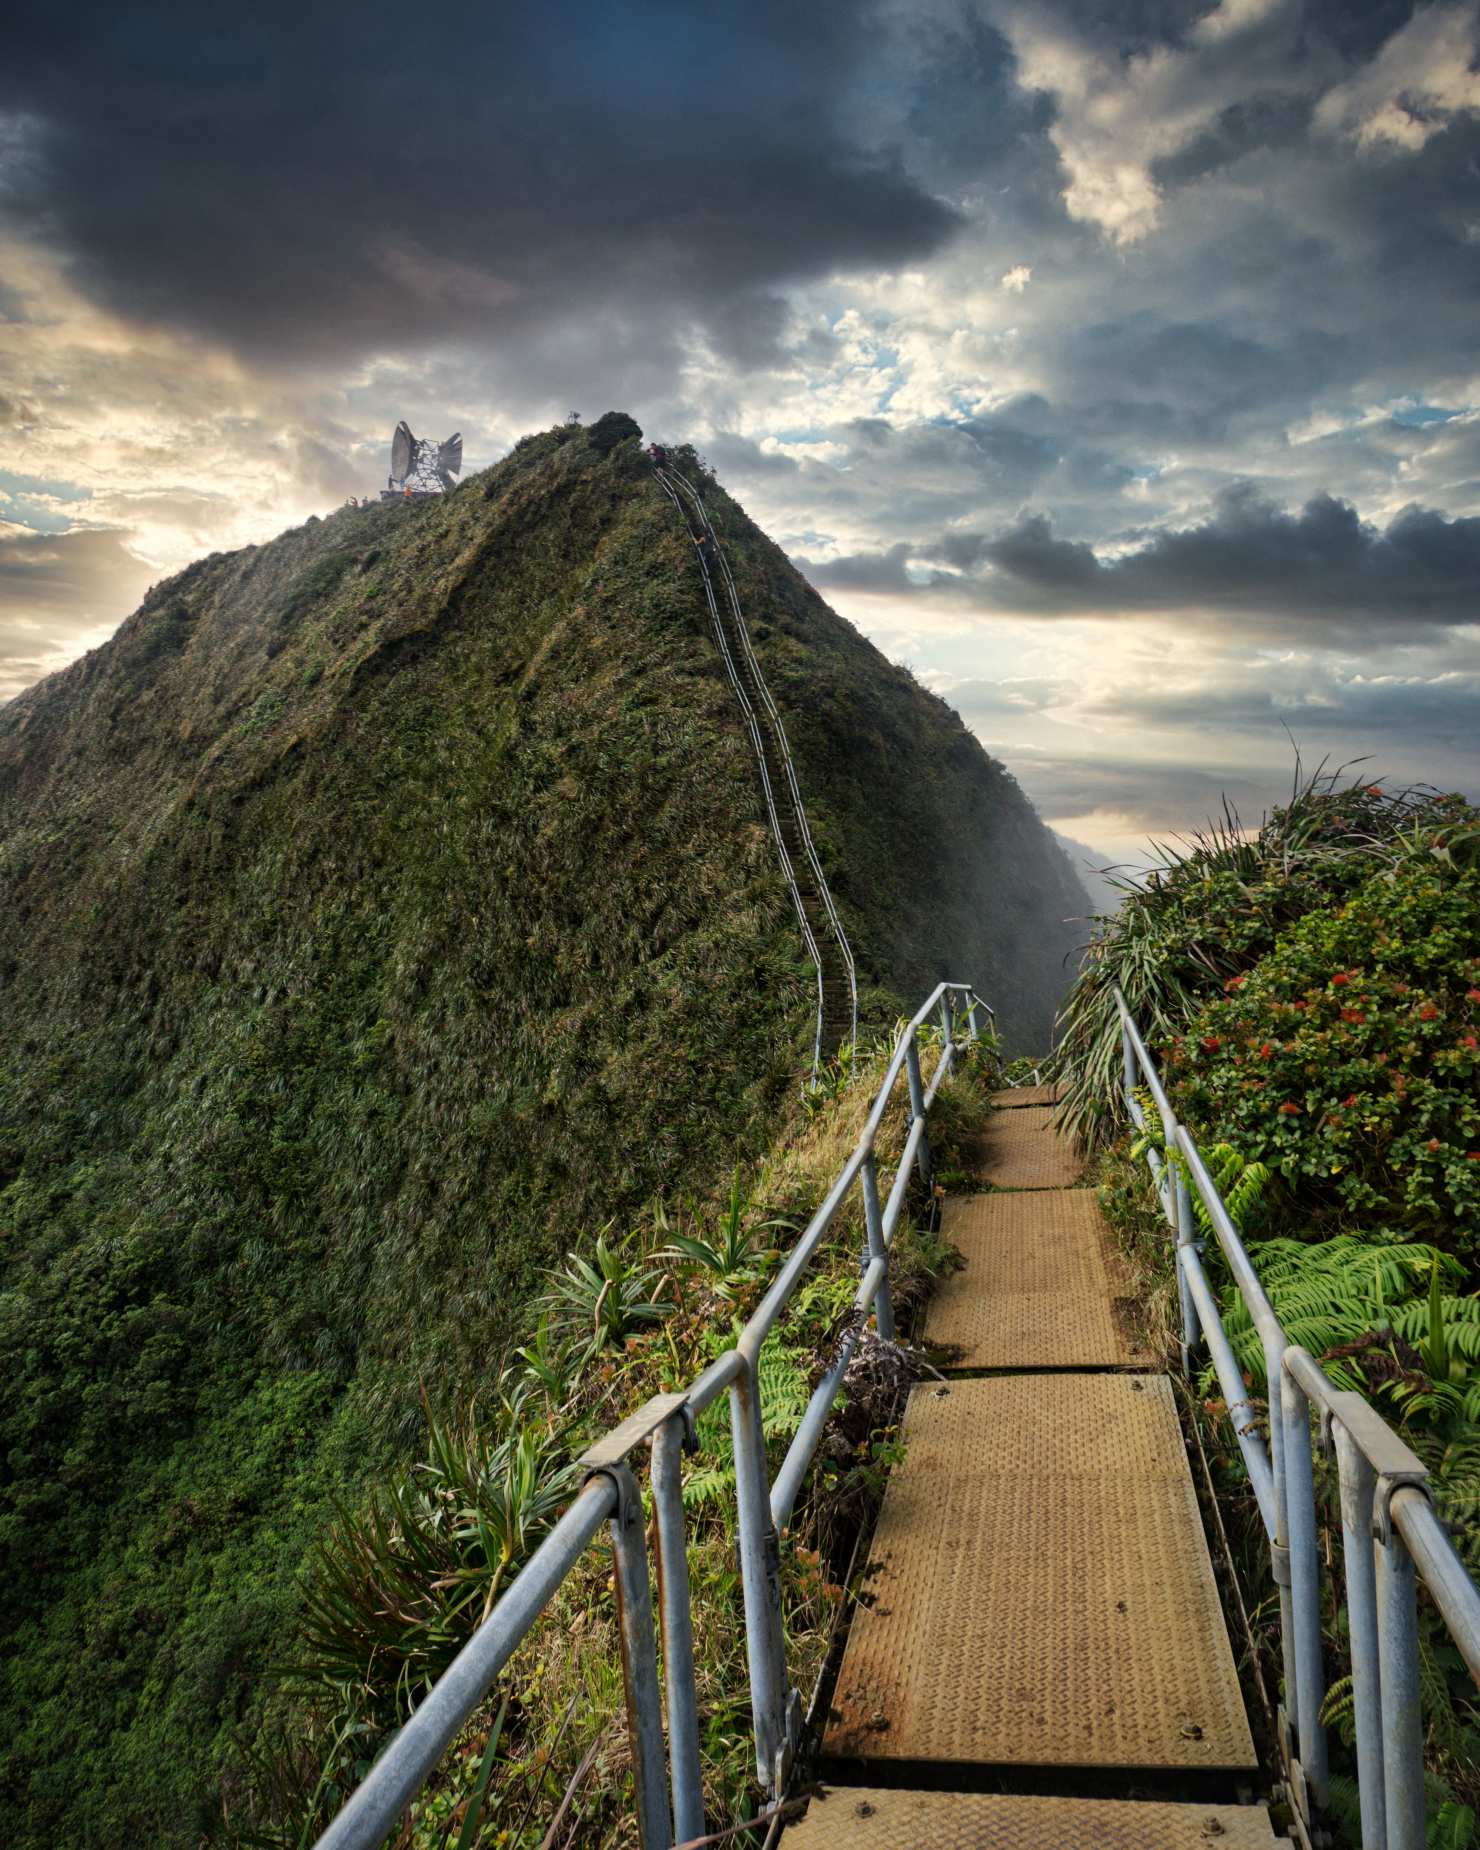 Haiku-trappen, også kaldet "Stairway to Heaven", er en forræderisk og dragende stålkonstruktion med 3,922 trin. Trappen blev oprindeligt bygget i 1942 og gav adgang til den tophemmelige Haʻikū Radio Station, en amerikansk flådes kommunikationsfacilitet under Anden Verdenskrig. Disse trapper spænder over den majestætiske Ko'olau-bjergkæde og byder på en betagende panoramaudsigt over Kaneohe og Kaneohe-bugten.